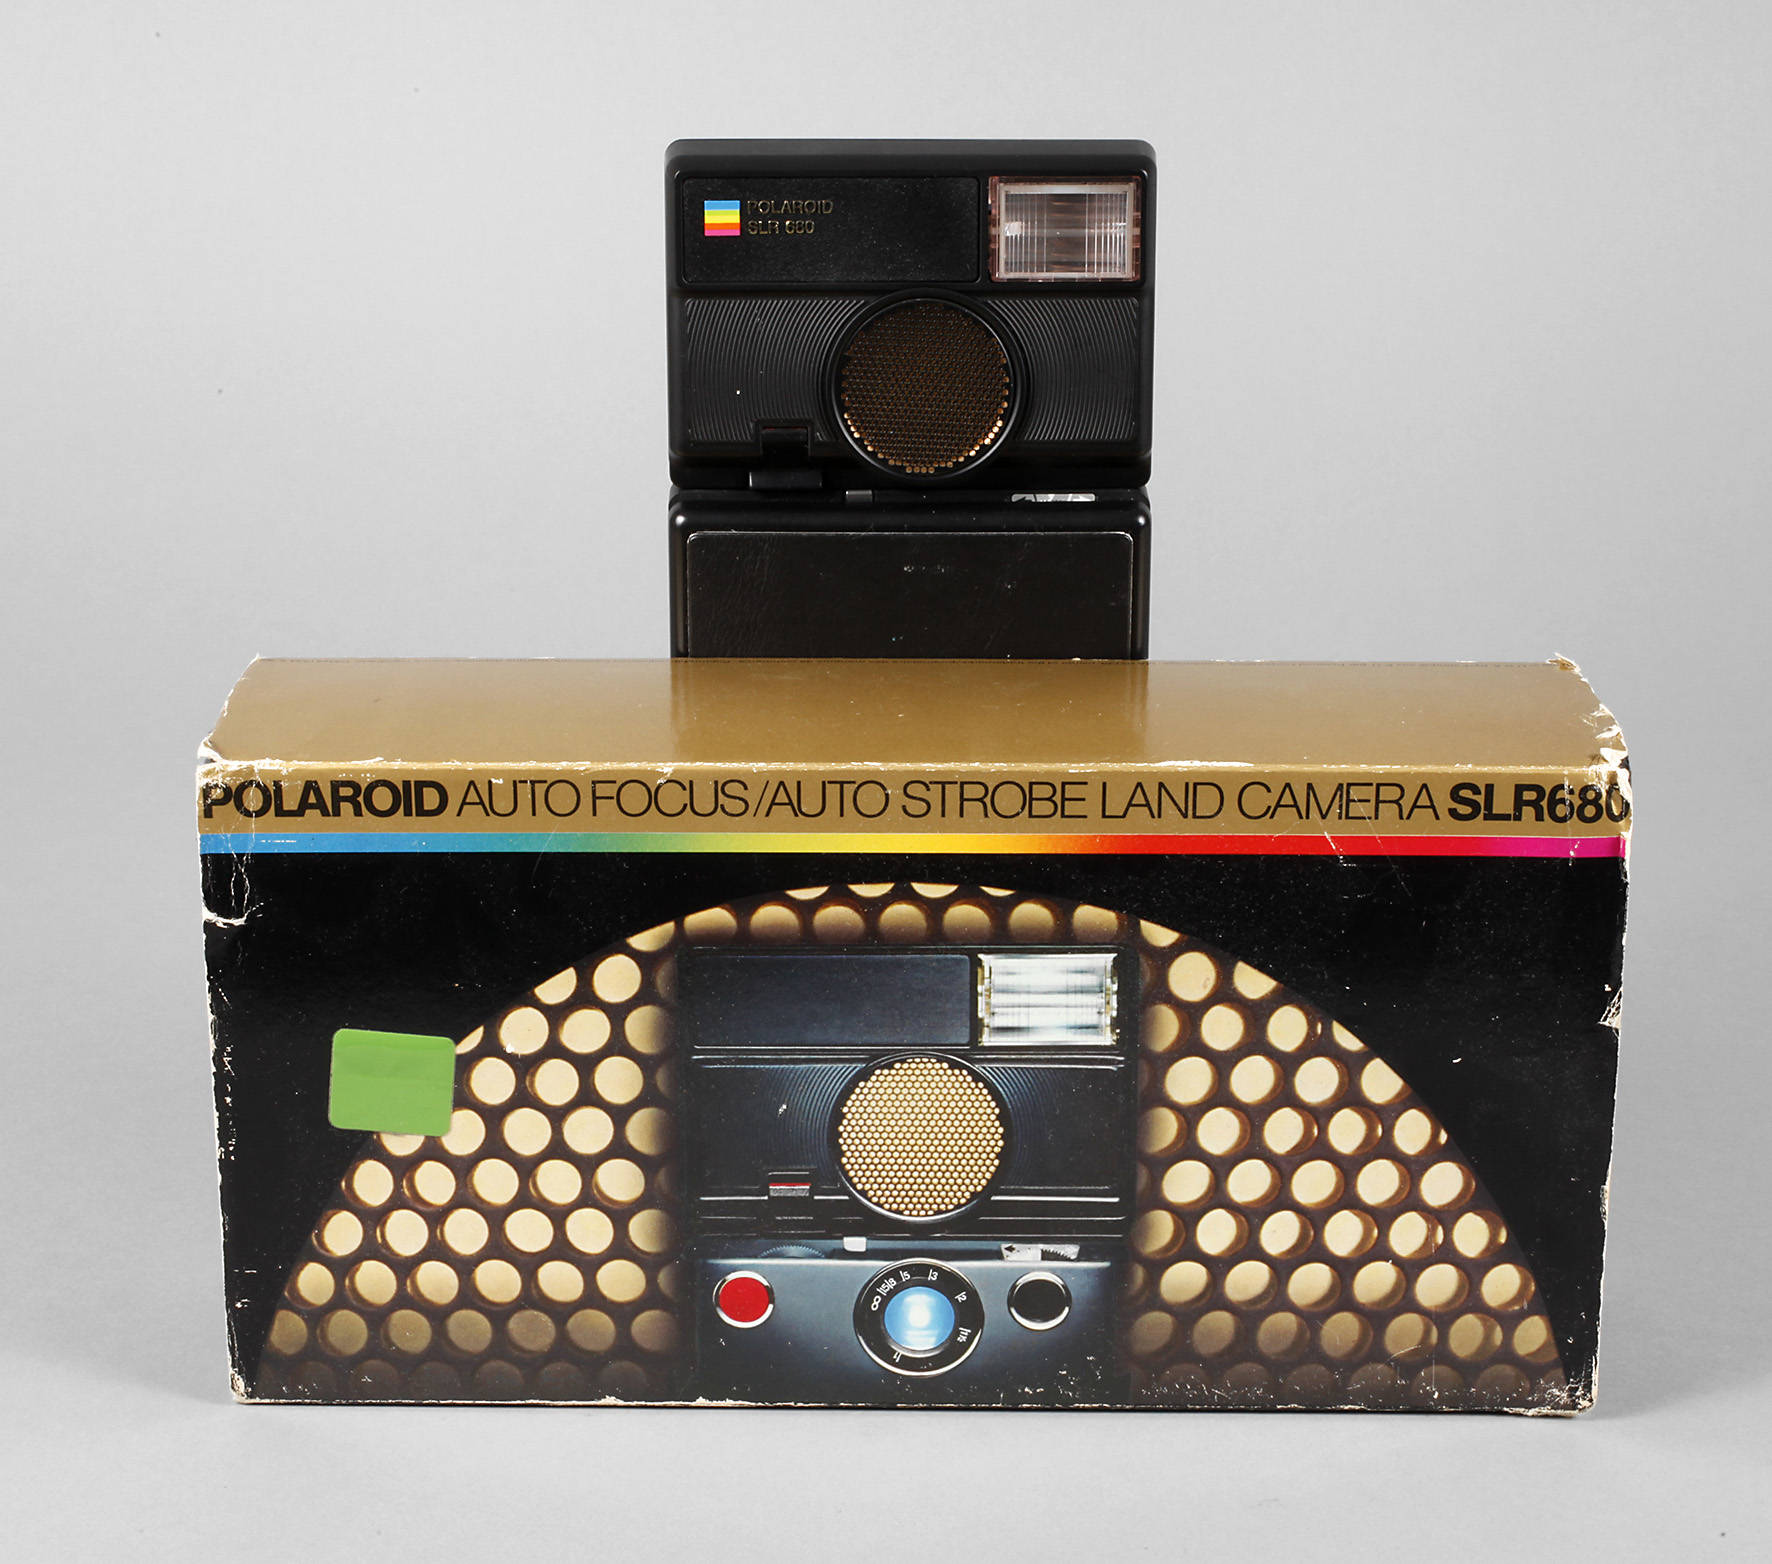 Sofortbildkamera Polaroid